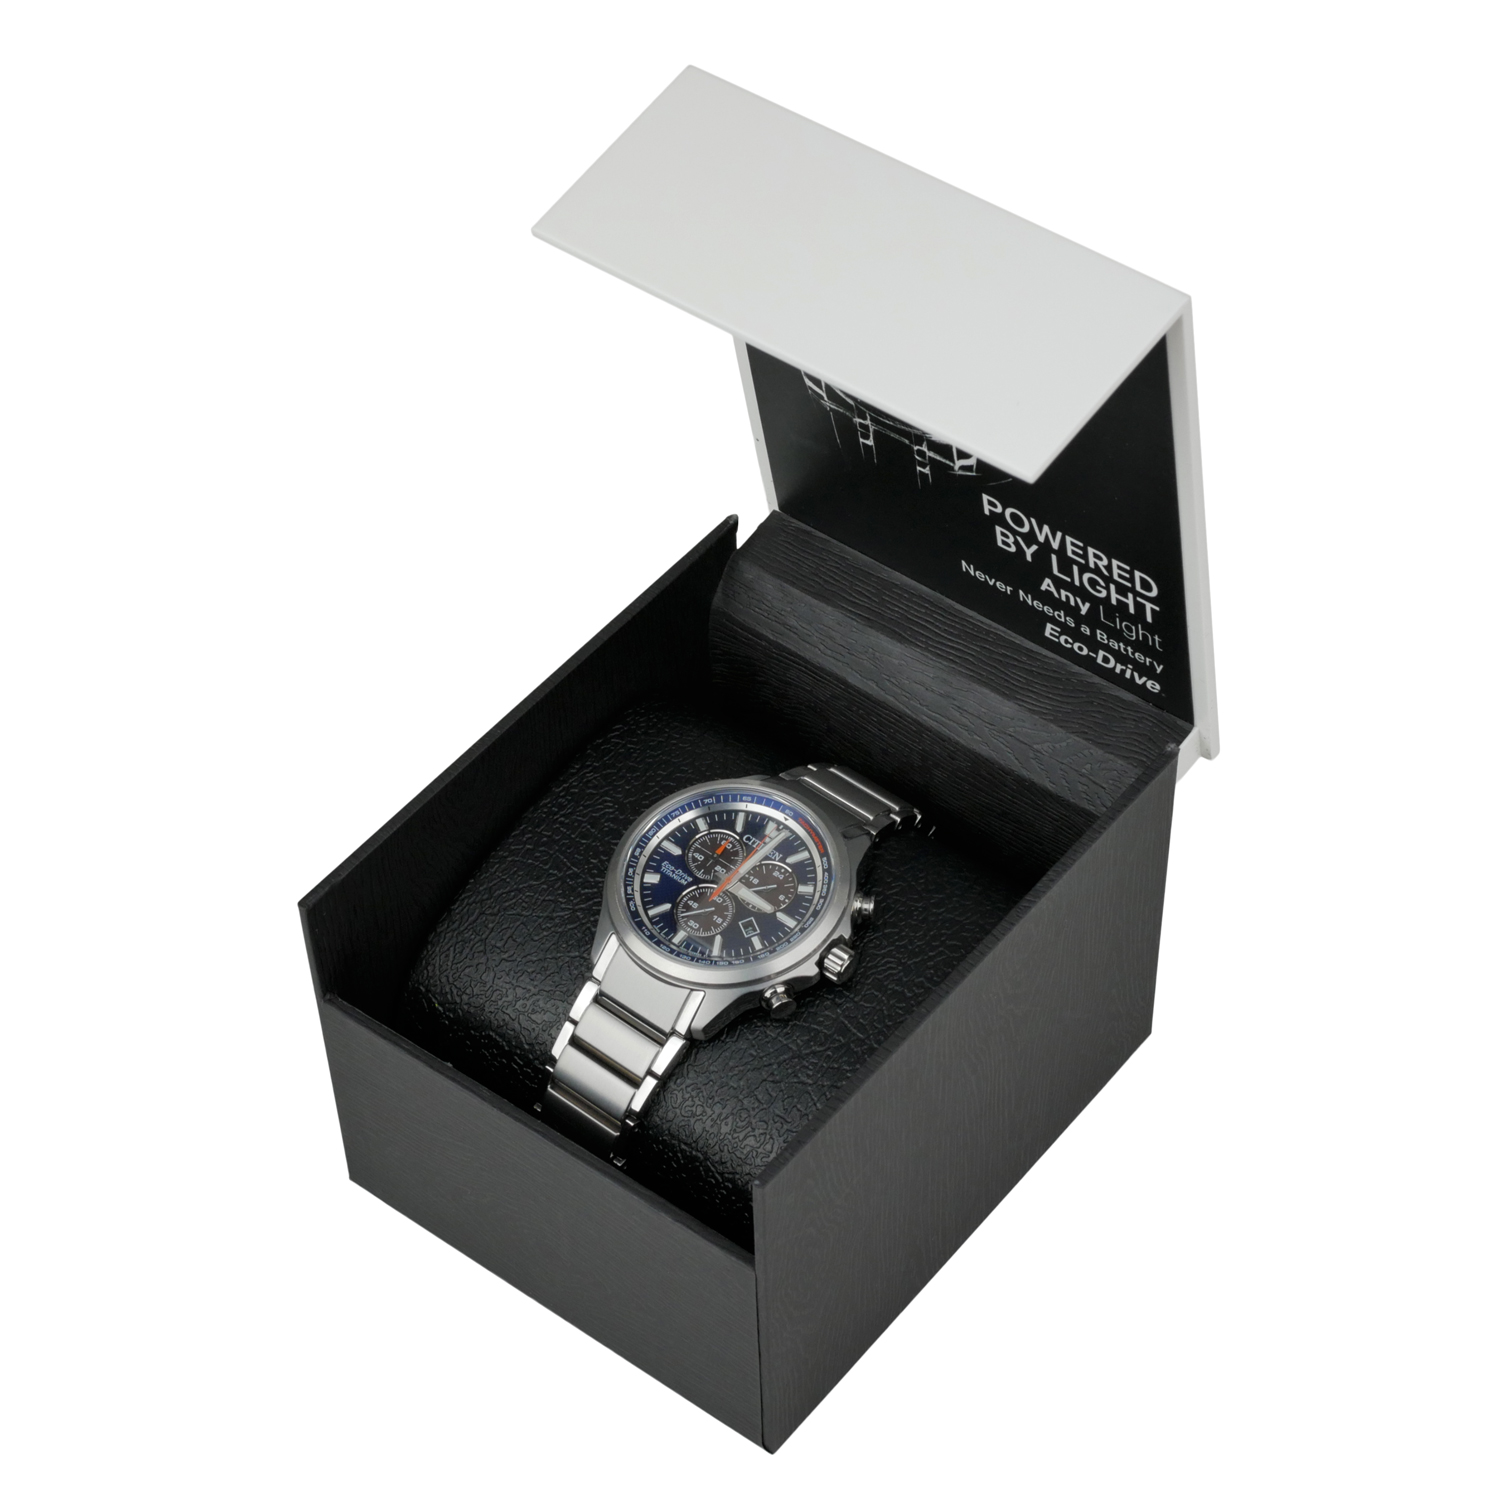 Citizen Eco-Drive Super Titanium Men's Chronograph Watch AT2471-58L